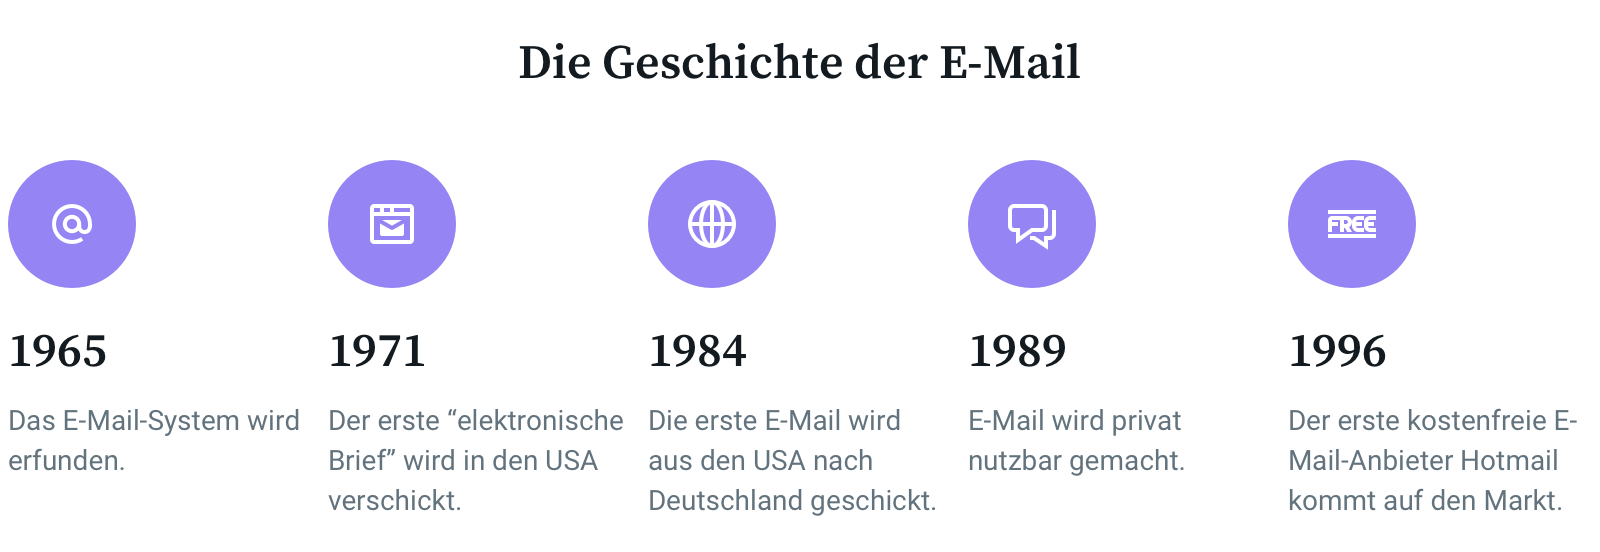 Die Geschichte der E-Mail